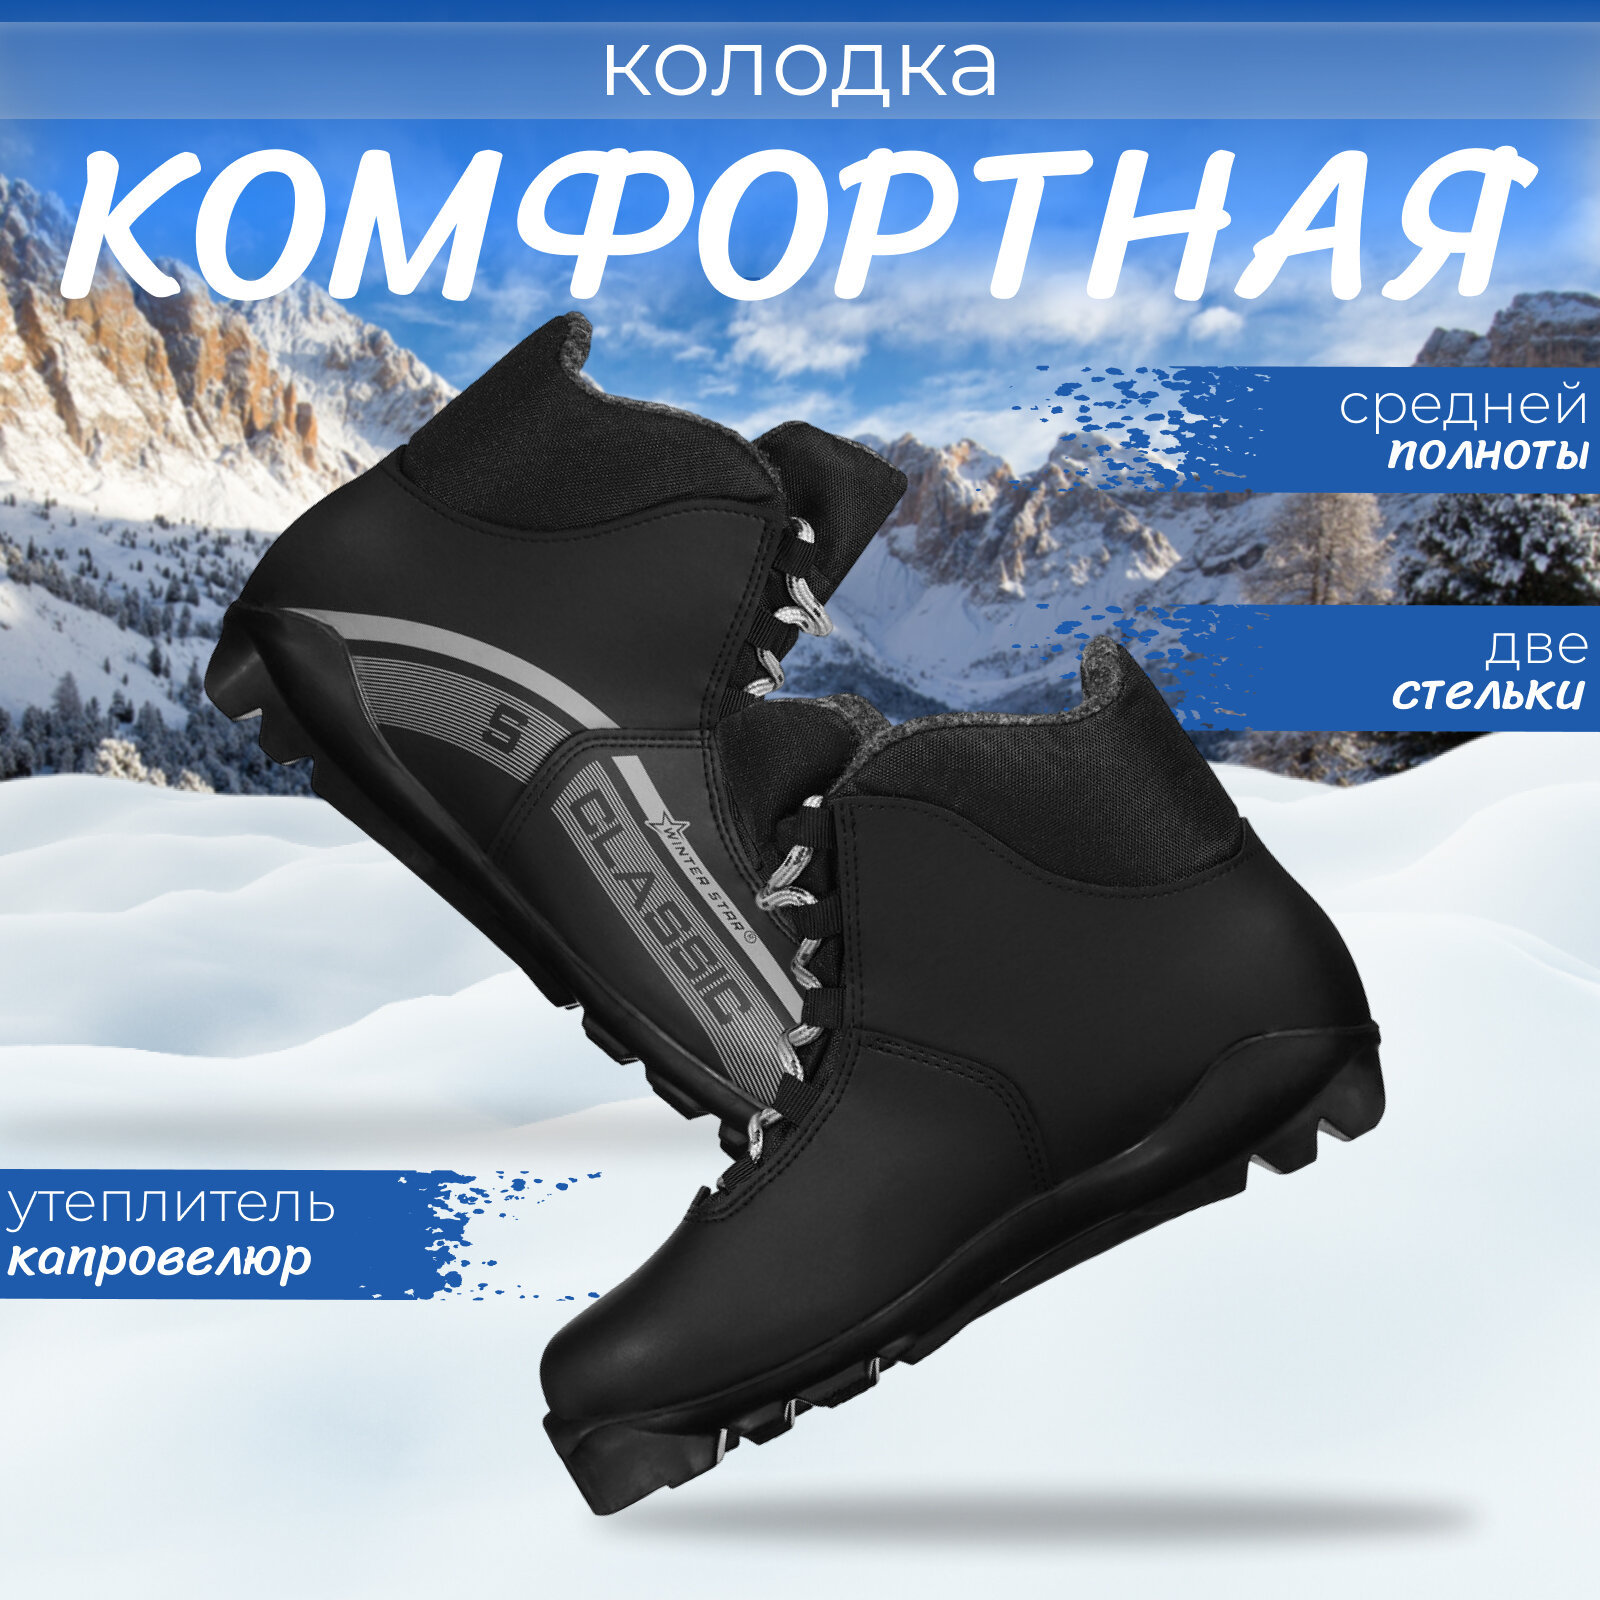 Ботинки лыжные Winter Star classic, SNS, размер 41, цвет чёрный, серый